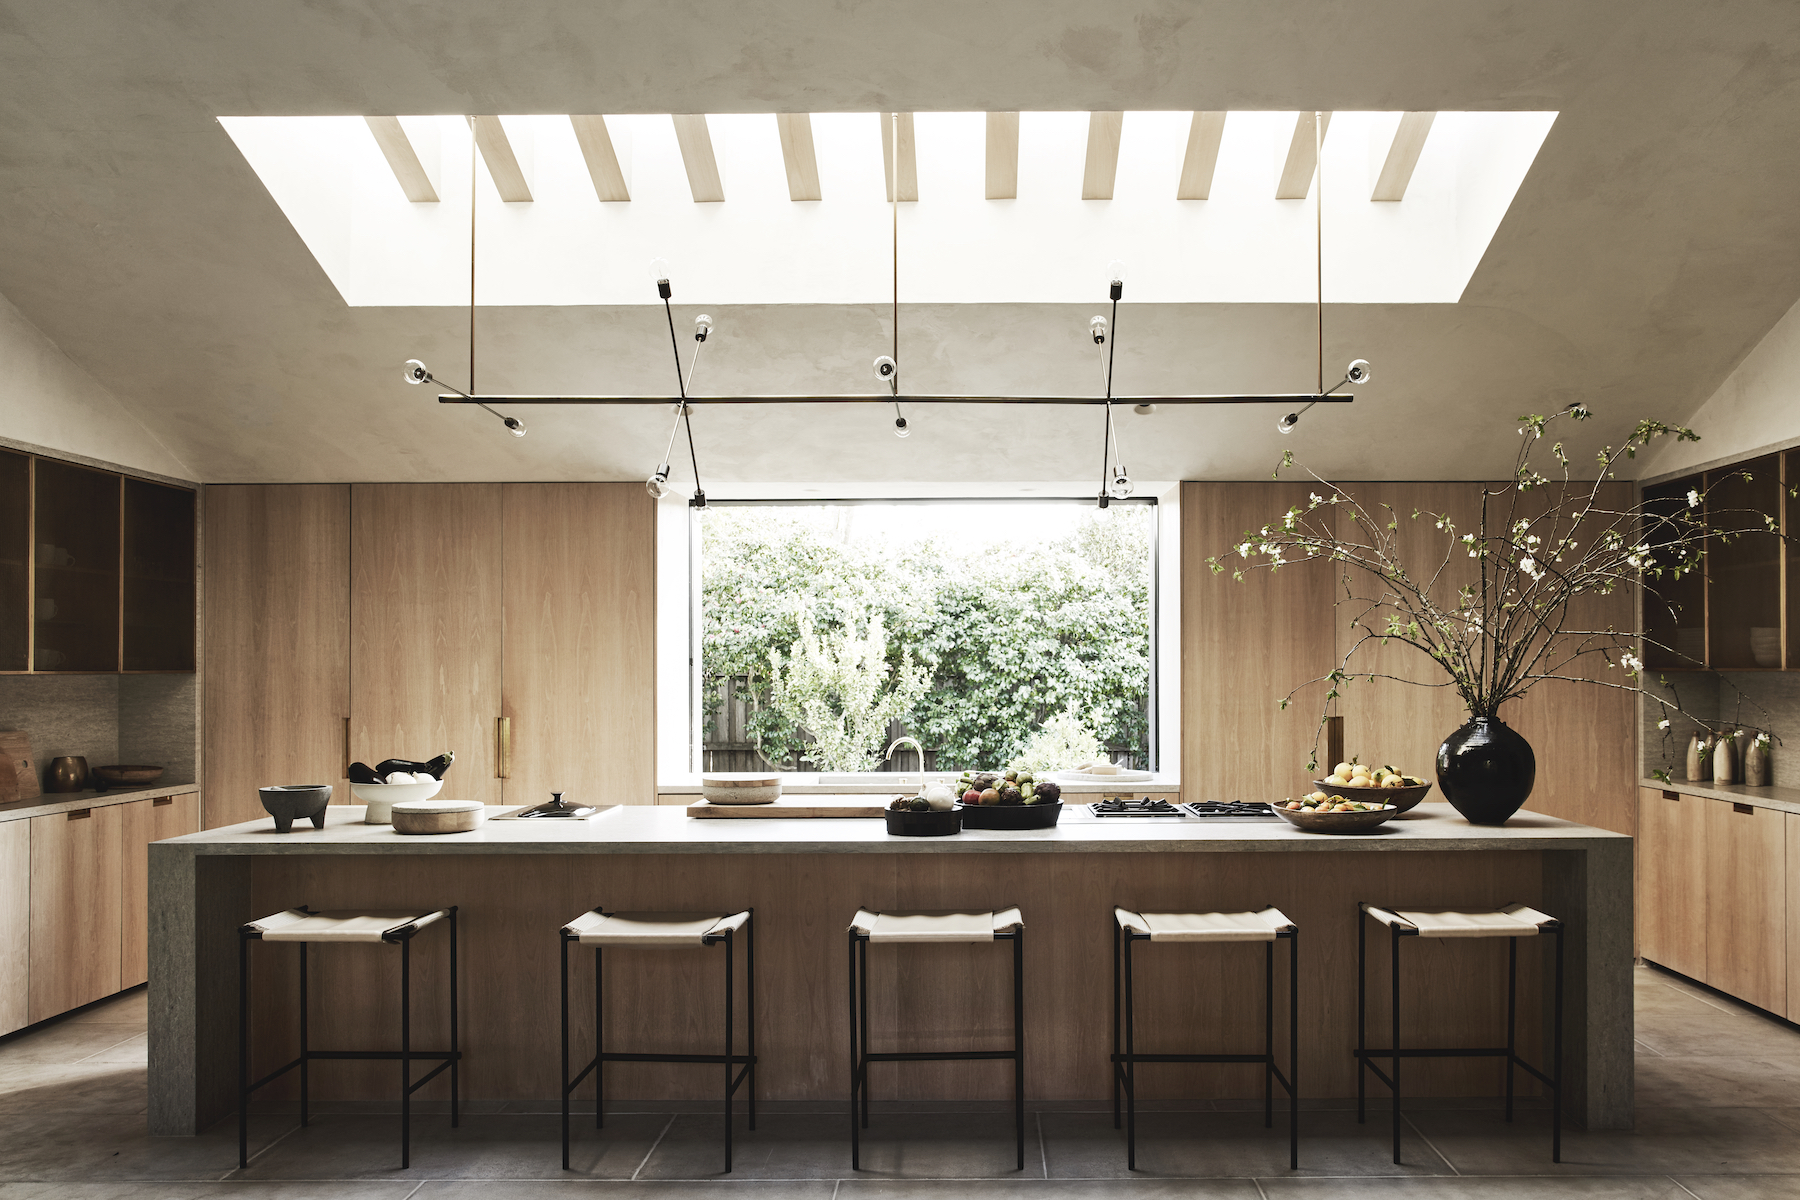 Kitchen at Bonsall in Malibu interior designed by Vanessa Alexander in Effect Magazine